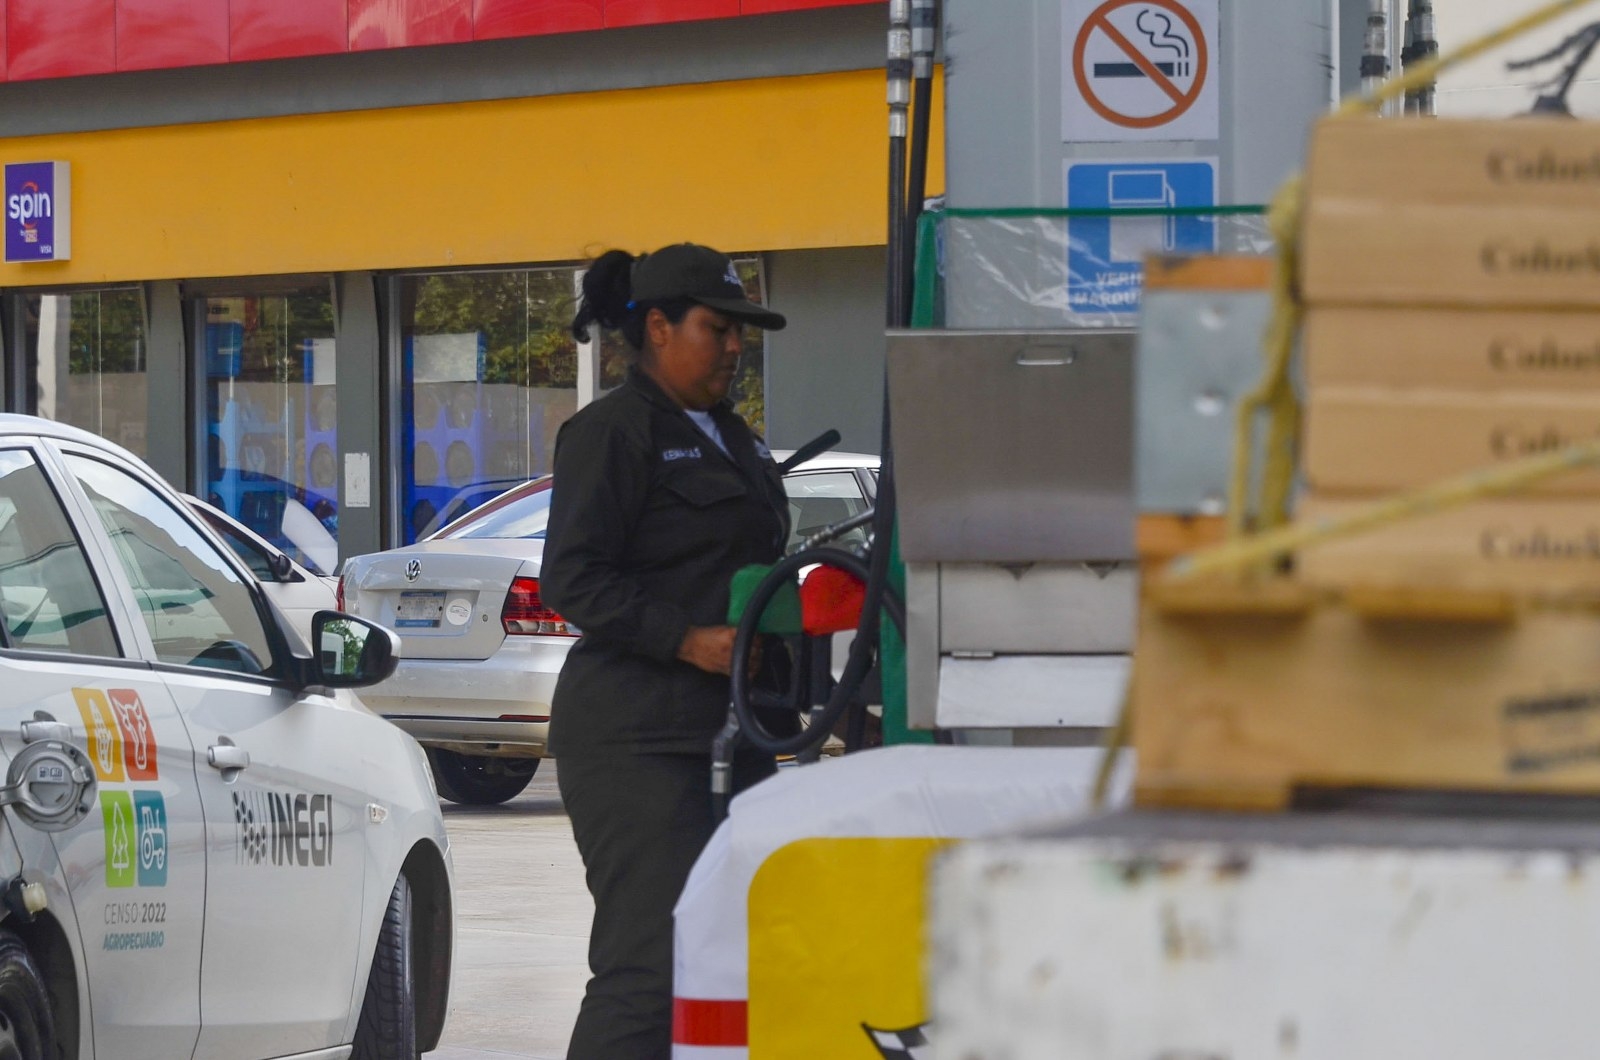 Cancunenses acusan a gasolineras de manipular precios y dar litros incompletos